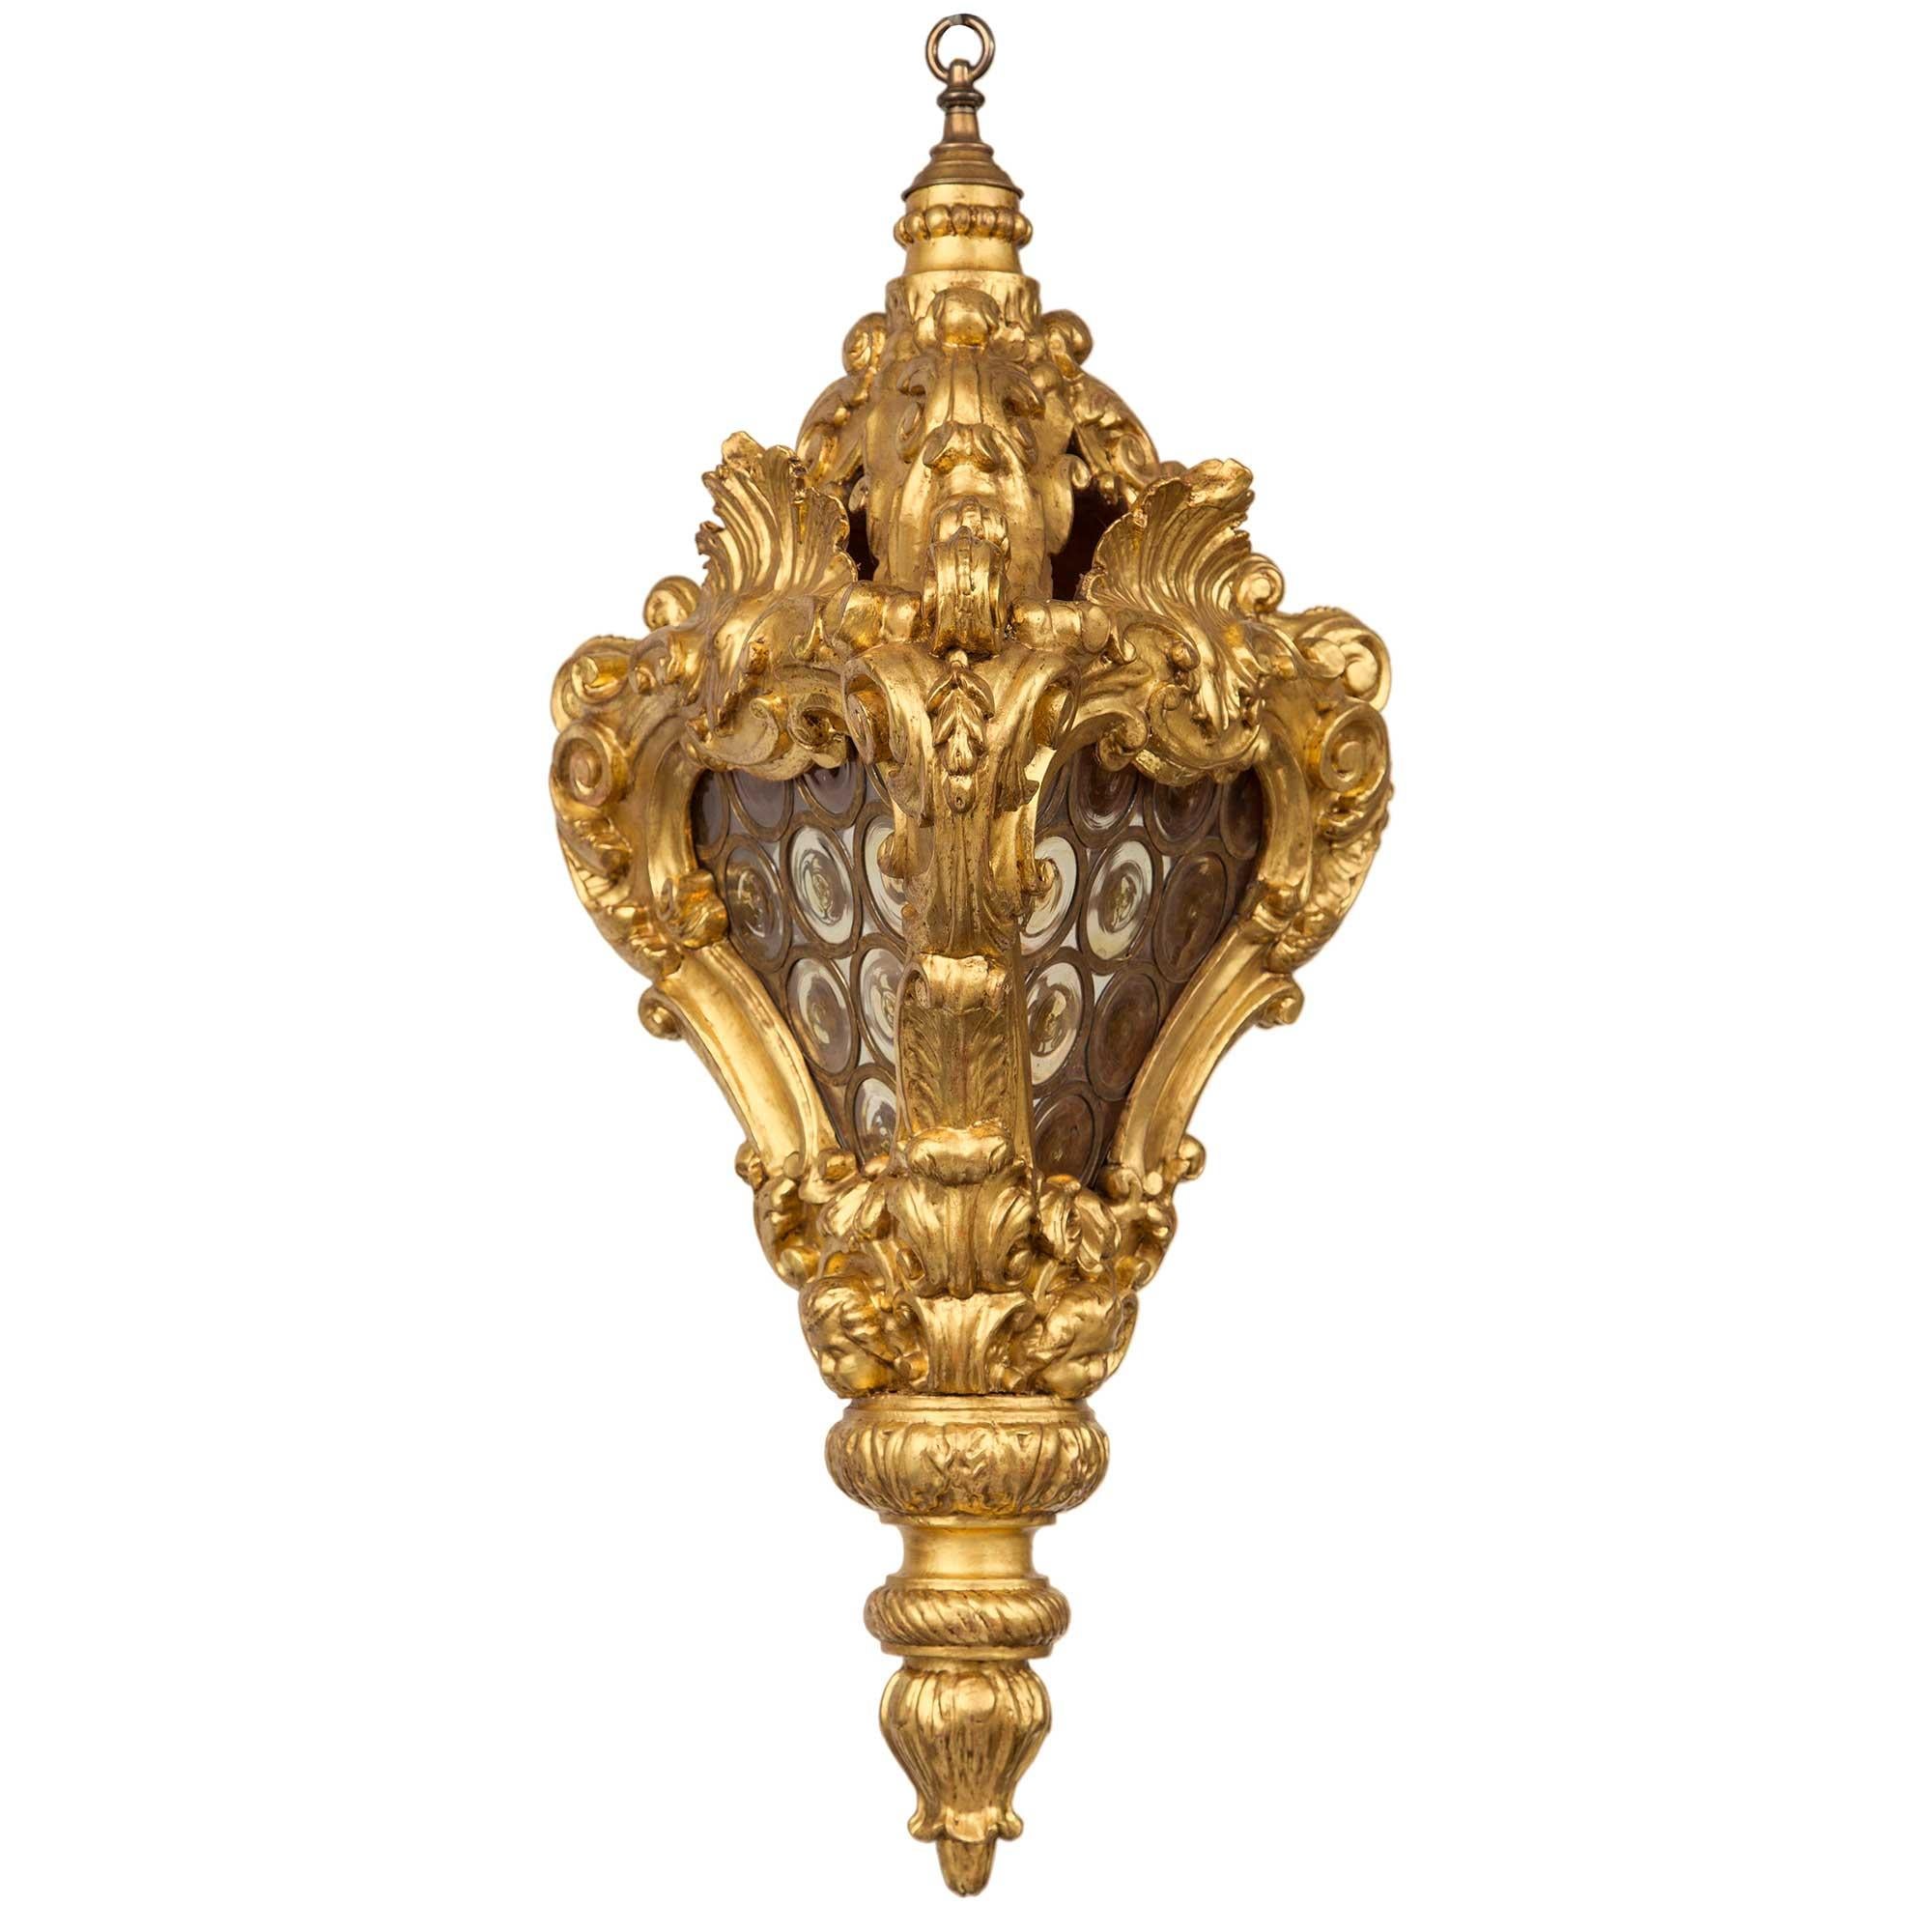 Une remarquable et unique lanterne en bois doré et en verre de la période baroque du 18e siècle. La lanterne est centrée par un épi de faîtage en forme de feuillage avec un motif torsadé enveloppant. Au-dessus d'une bordure de feuilles d'acanthe se